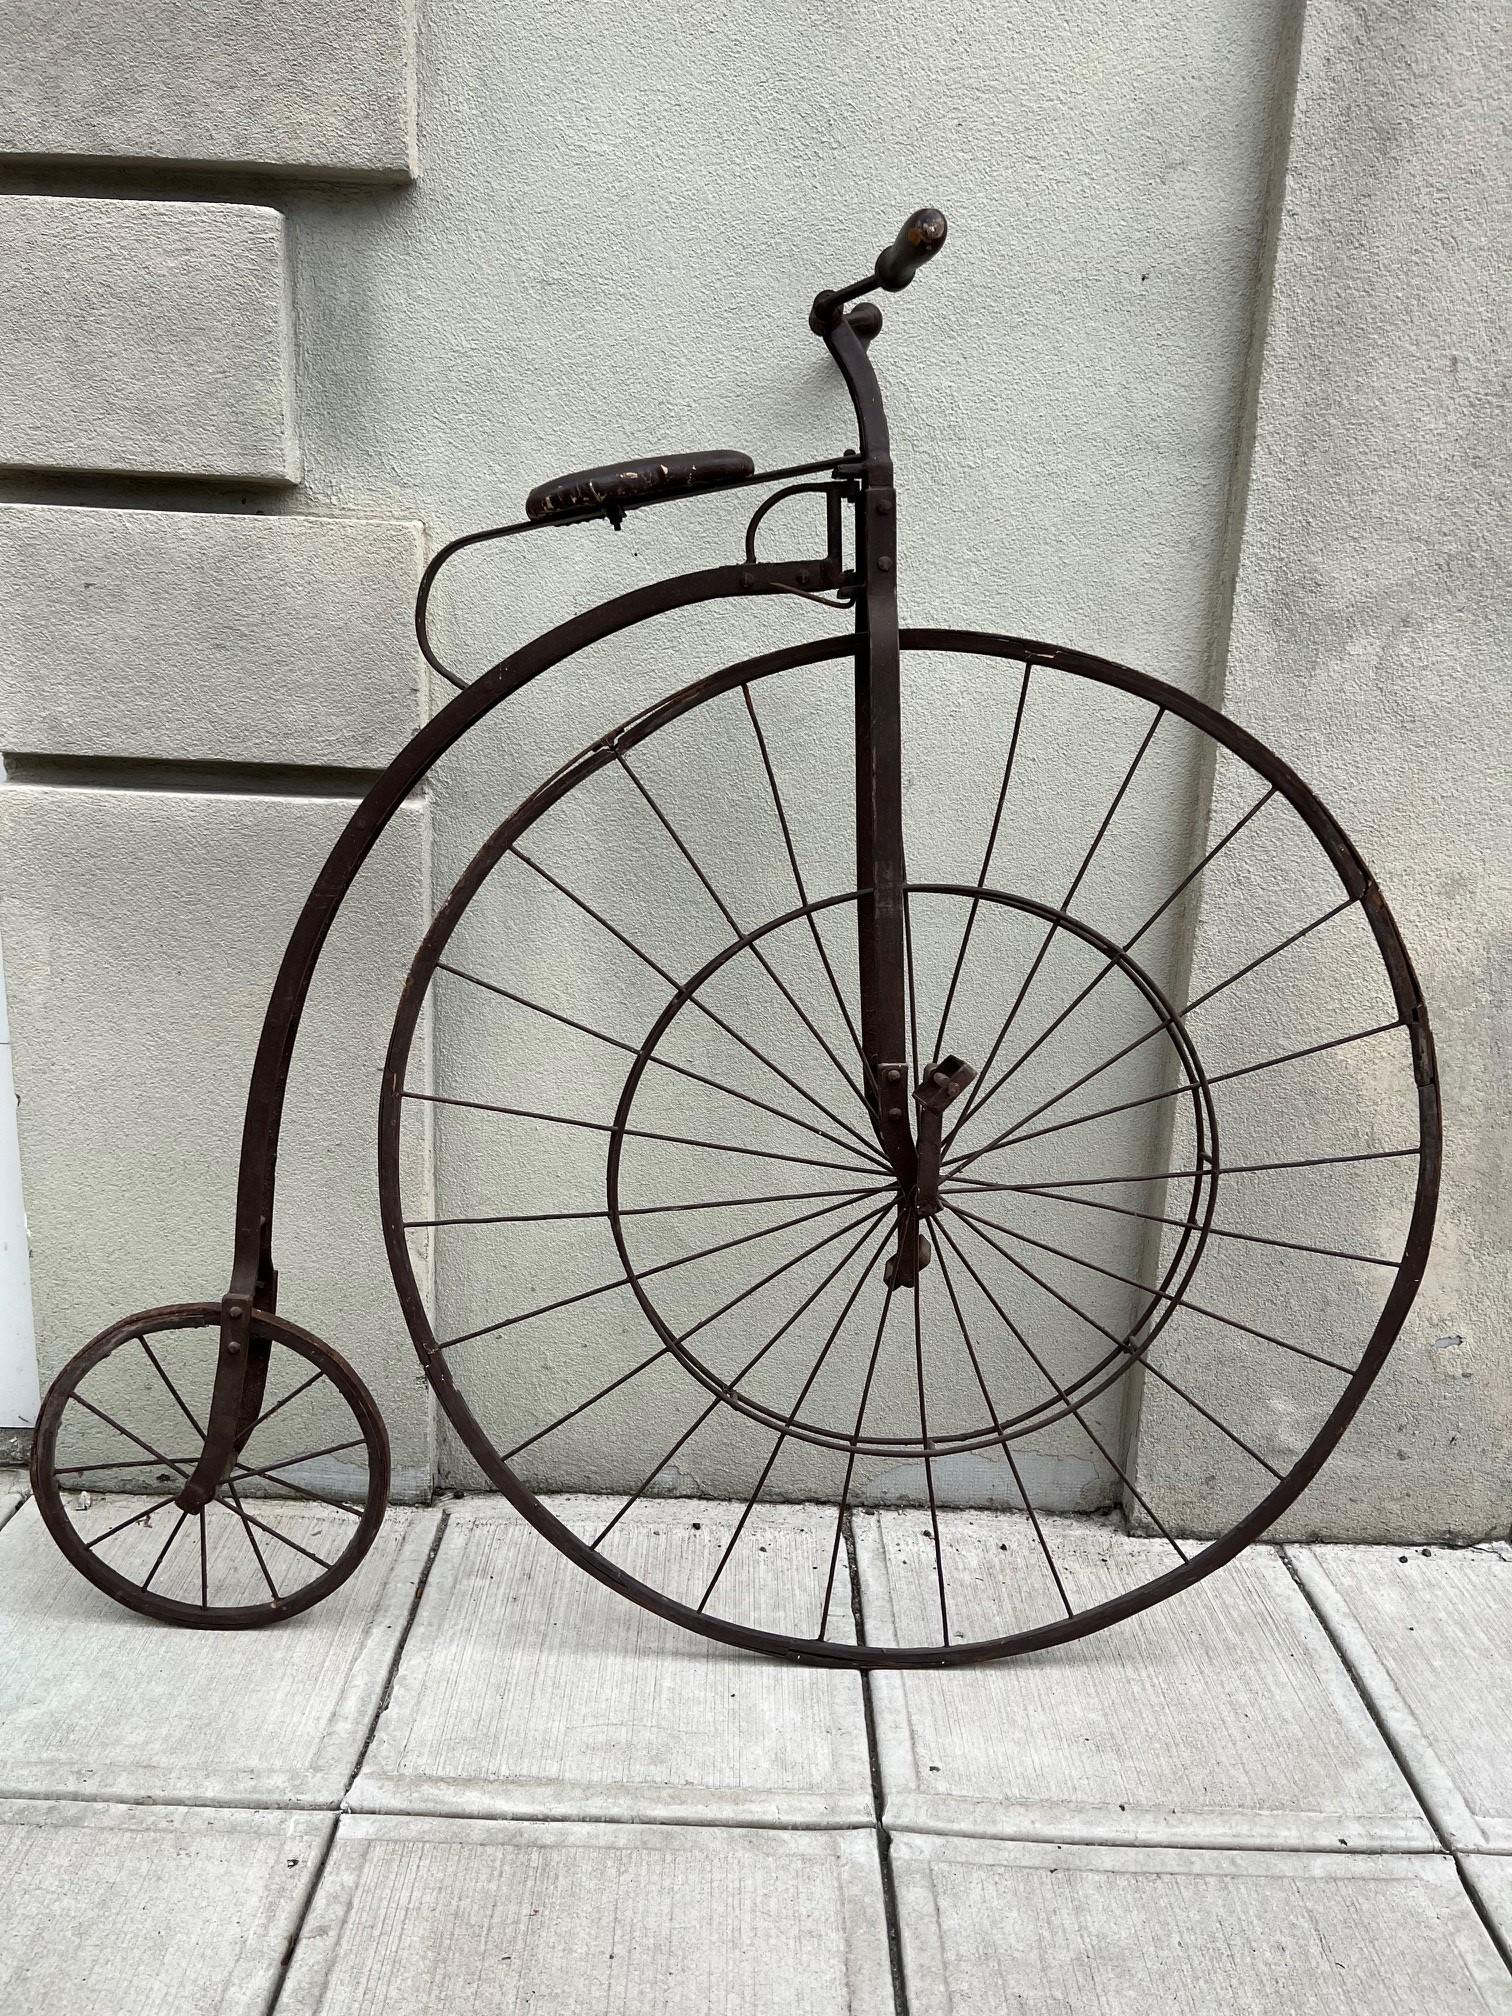 Fabelhaftes Hochrad-Fahrrad, ich glaube aus dem frühen 20. Jahrhundert, ca. 1920er Jahre. Es scheint eine Größe kleiner als ein Penny Farthing und größer als ein Kinderhochrad zu sein. Tut mir leid, ich wünschte, ich hätte mehr Informationen, ich